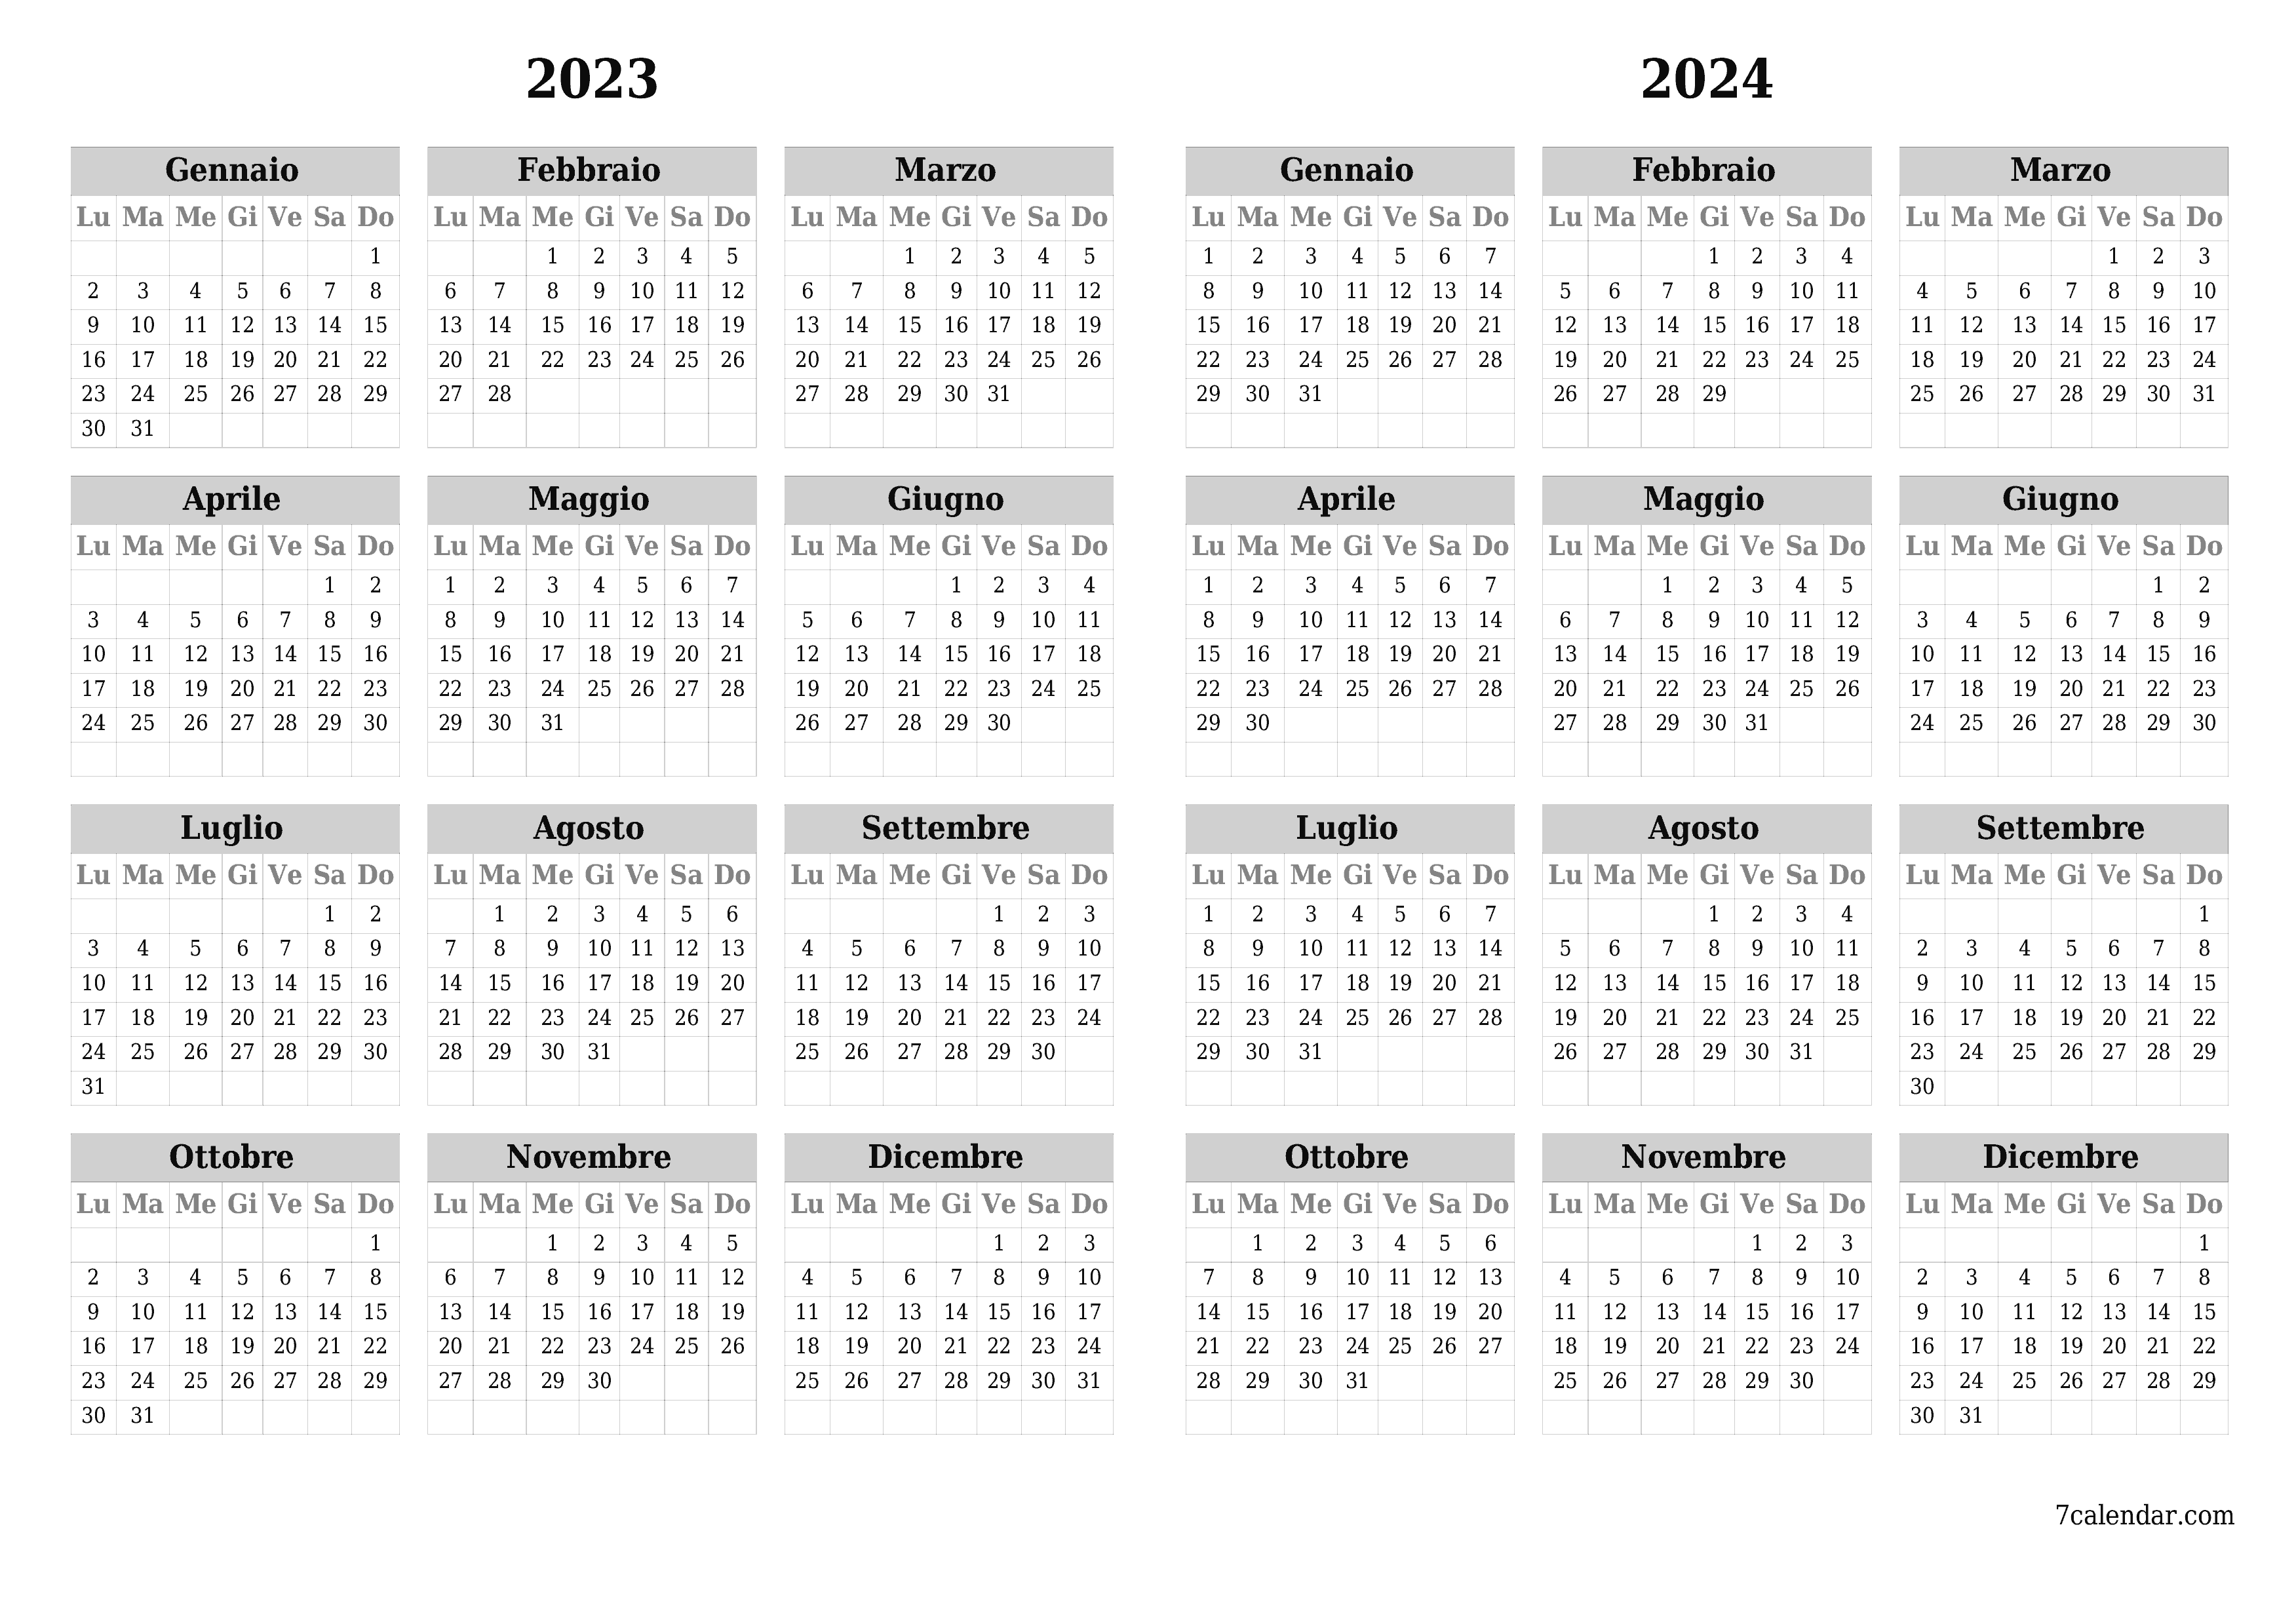  stampabile da parete modello di gratuitoorizzontale Annuale calendario Settembre (Set) 2023